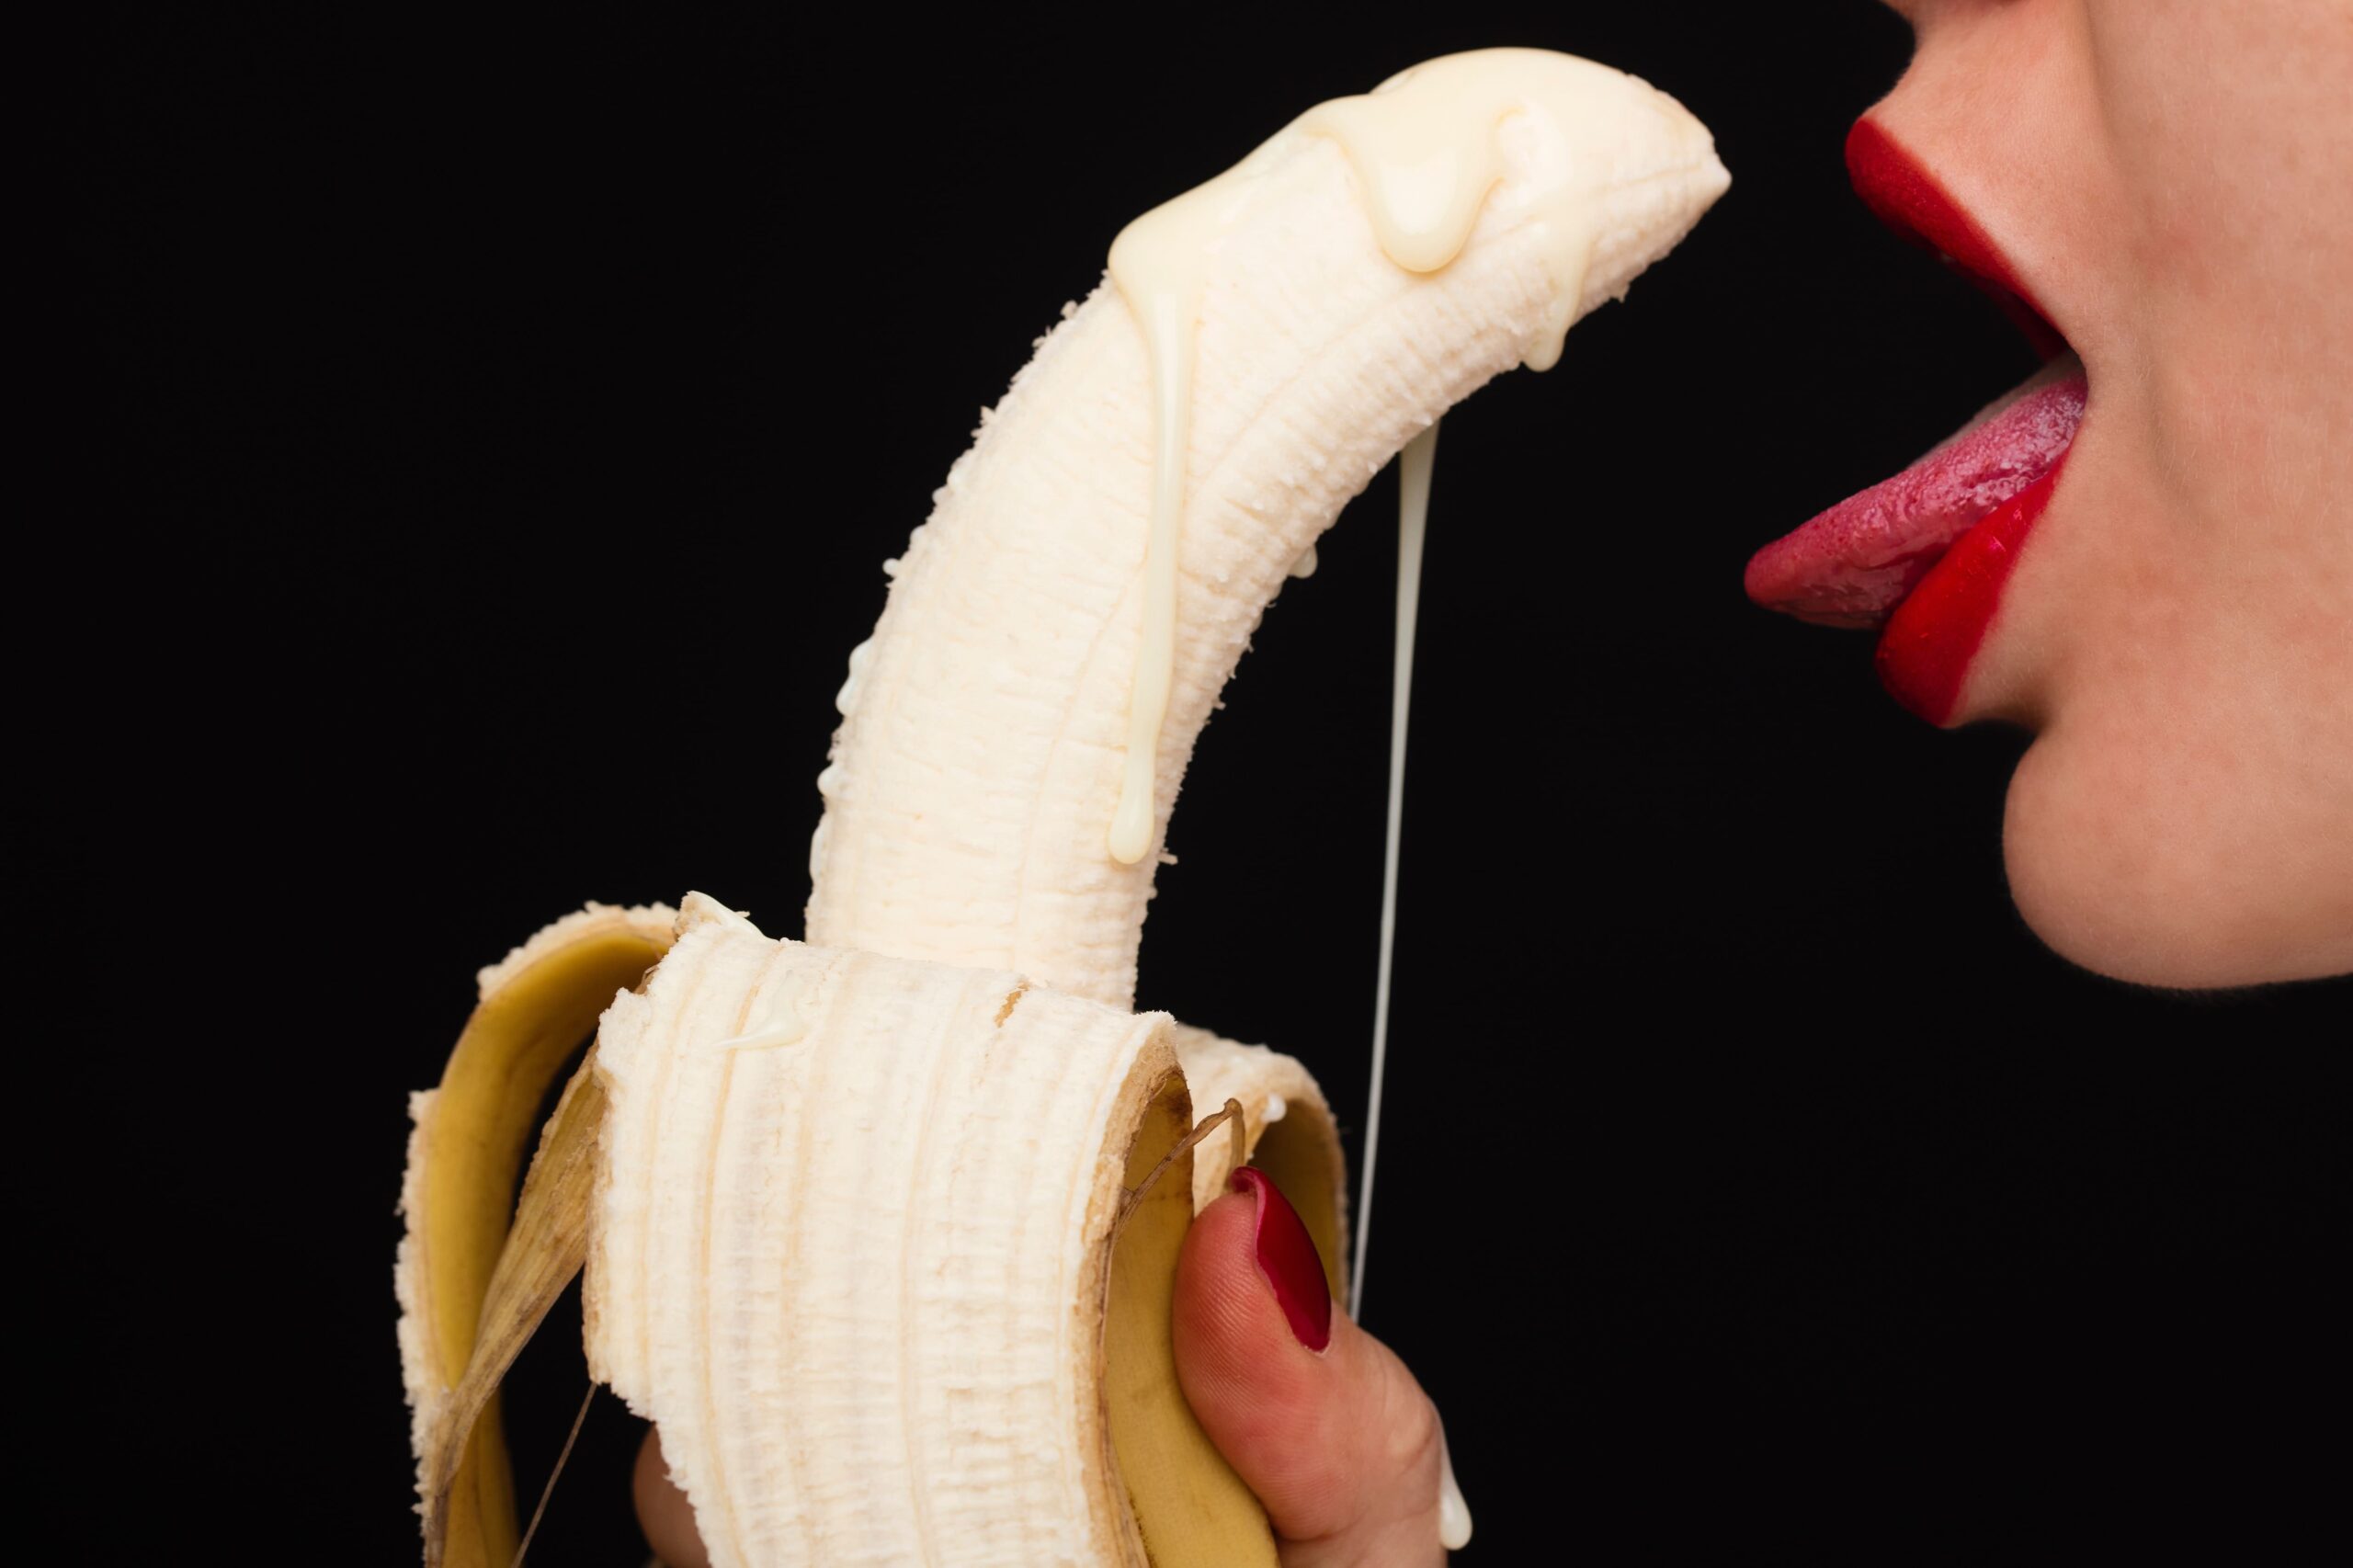 バナナをフェラする女性